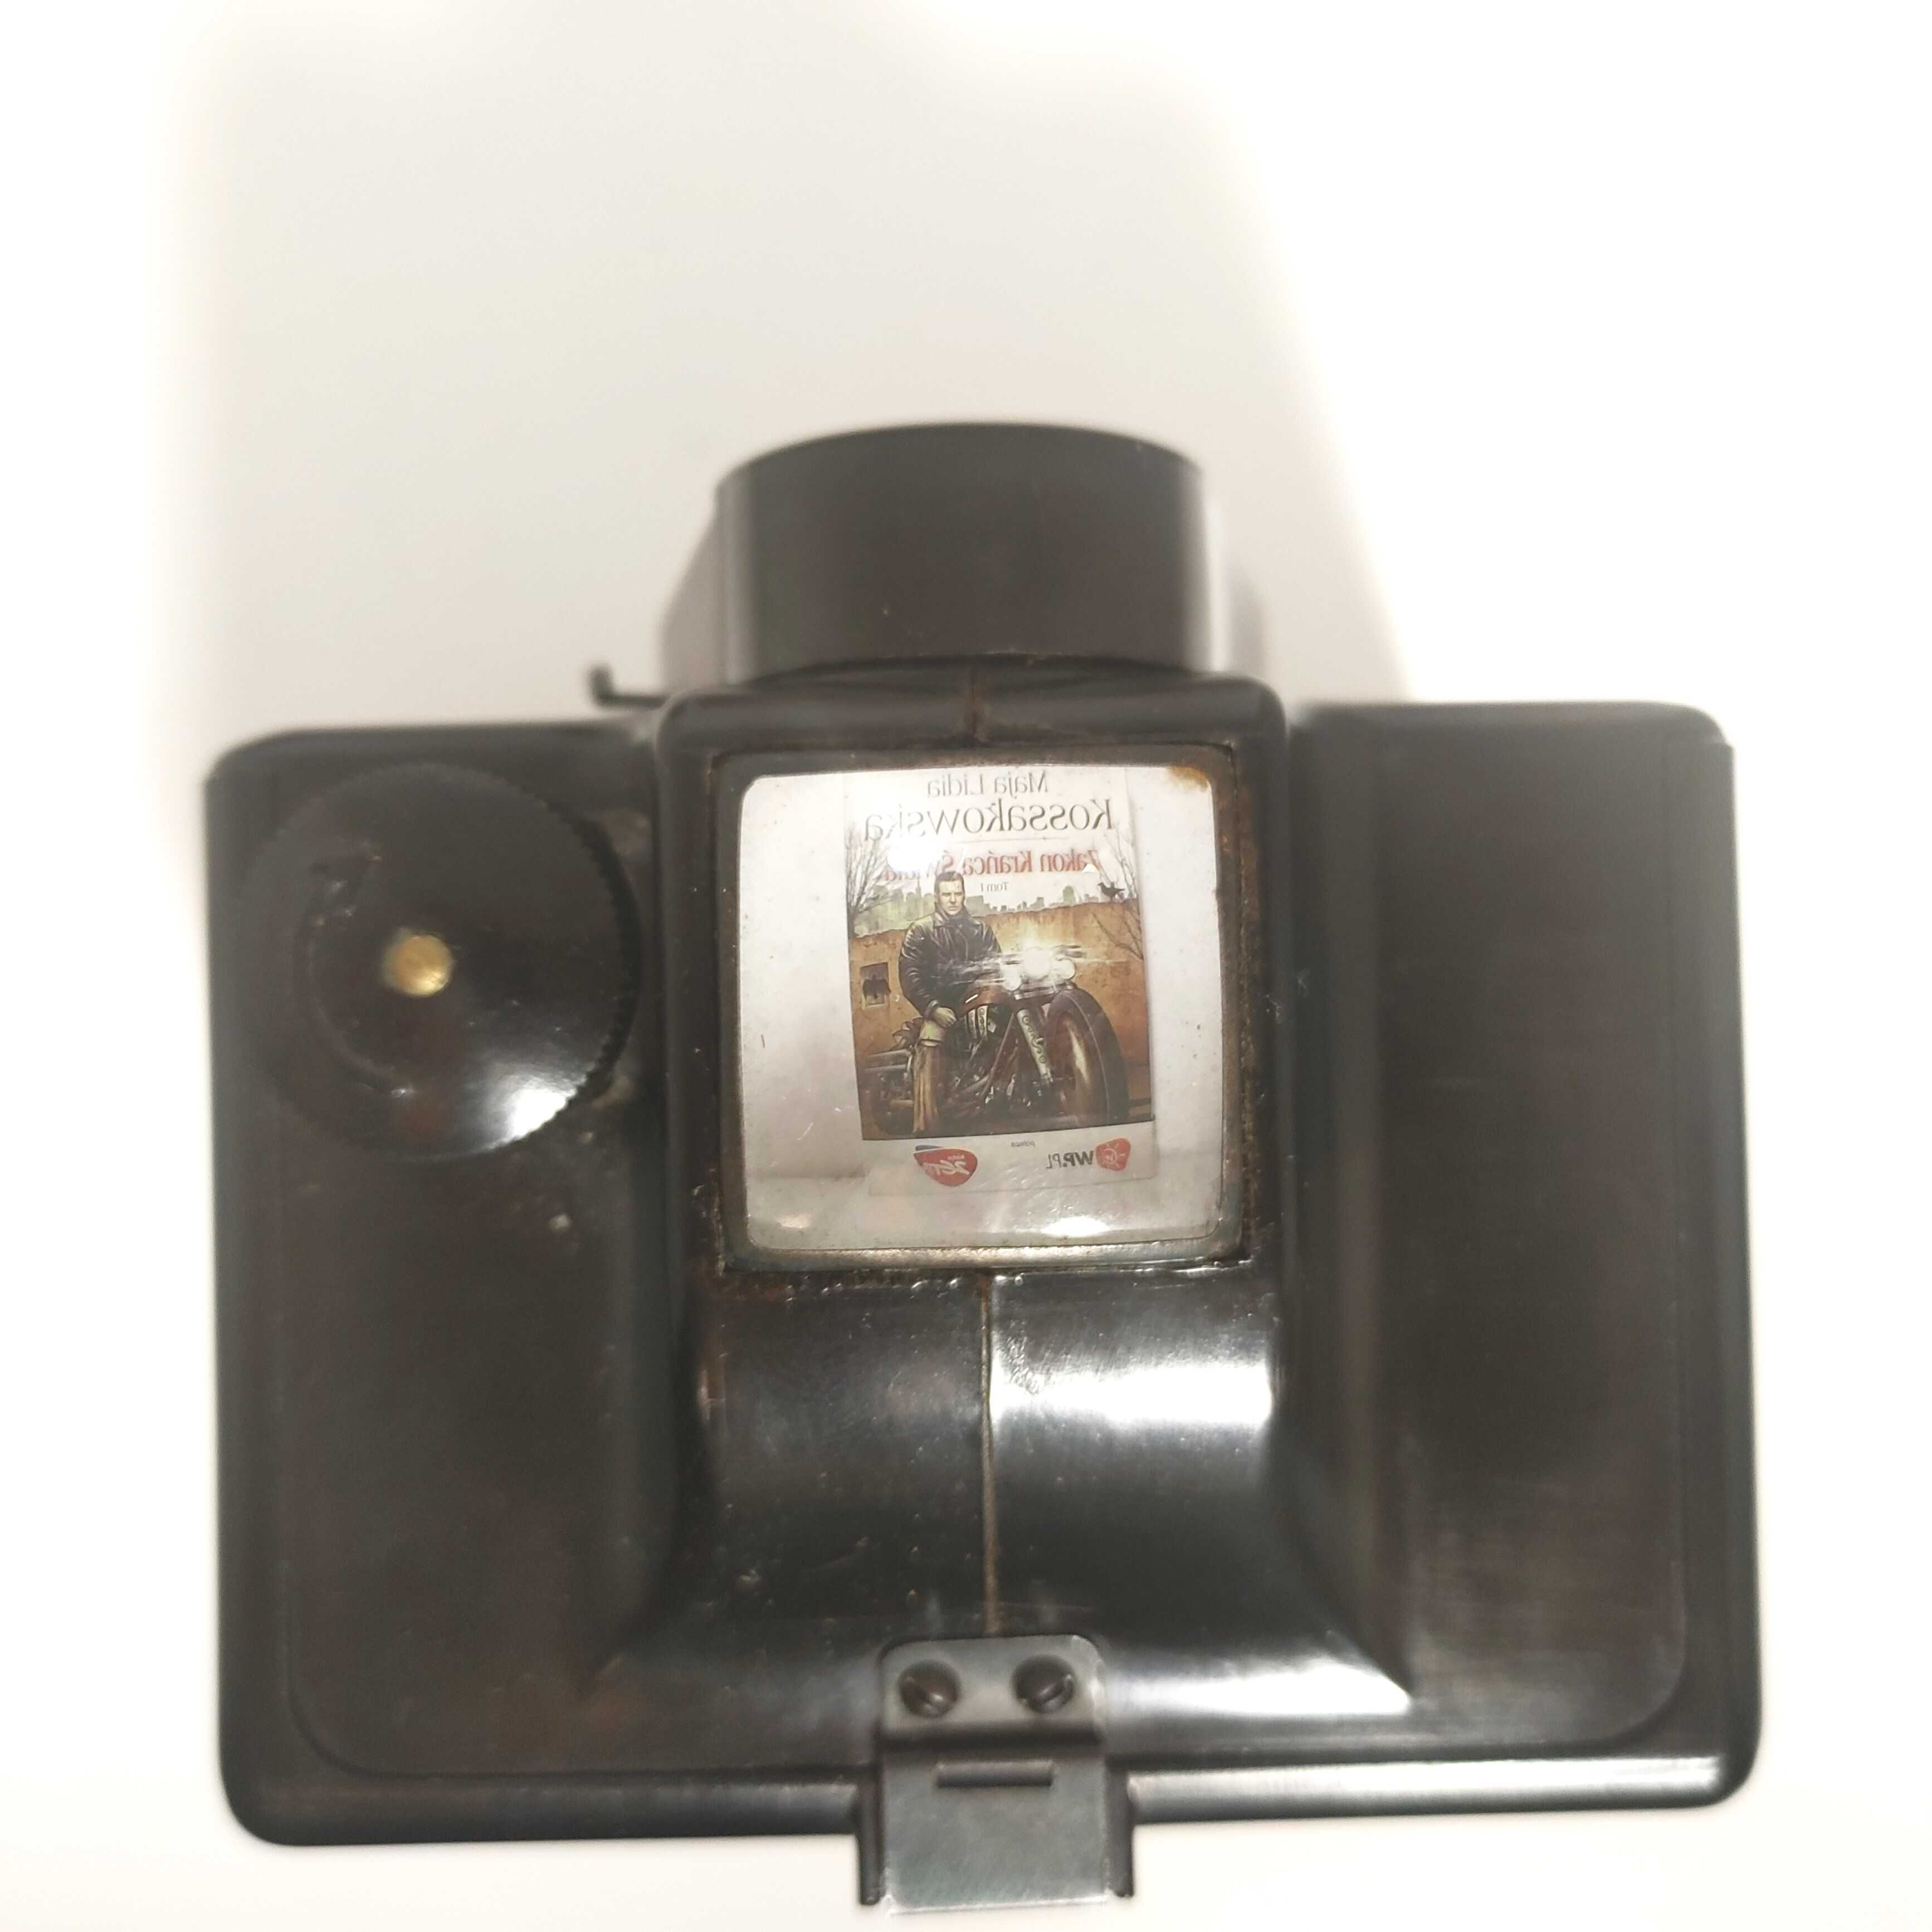 Pudełkowy Aparat fotograficzny UNIBOX film 120 6x6 camera obscura